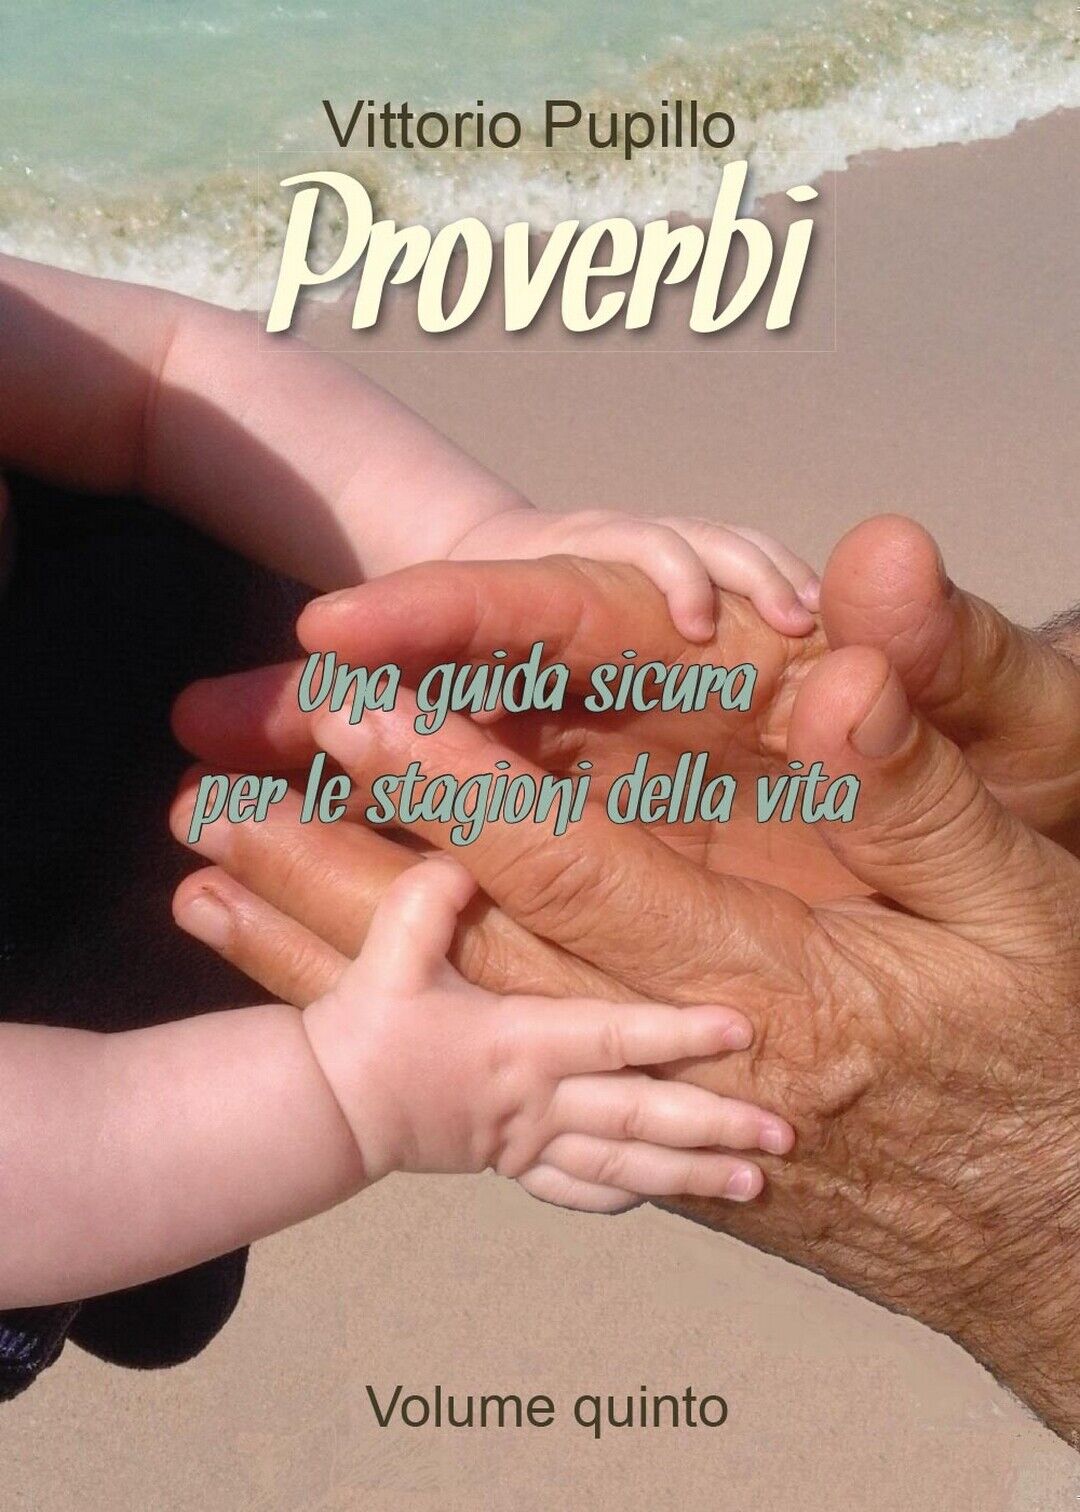 Proverbi - Una guida sicura per le stagioni della vita  di Vittorio Pupillo libro usato